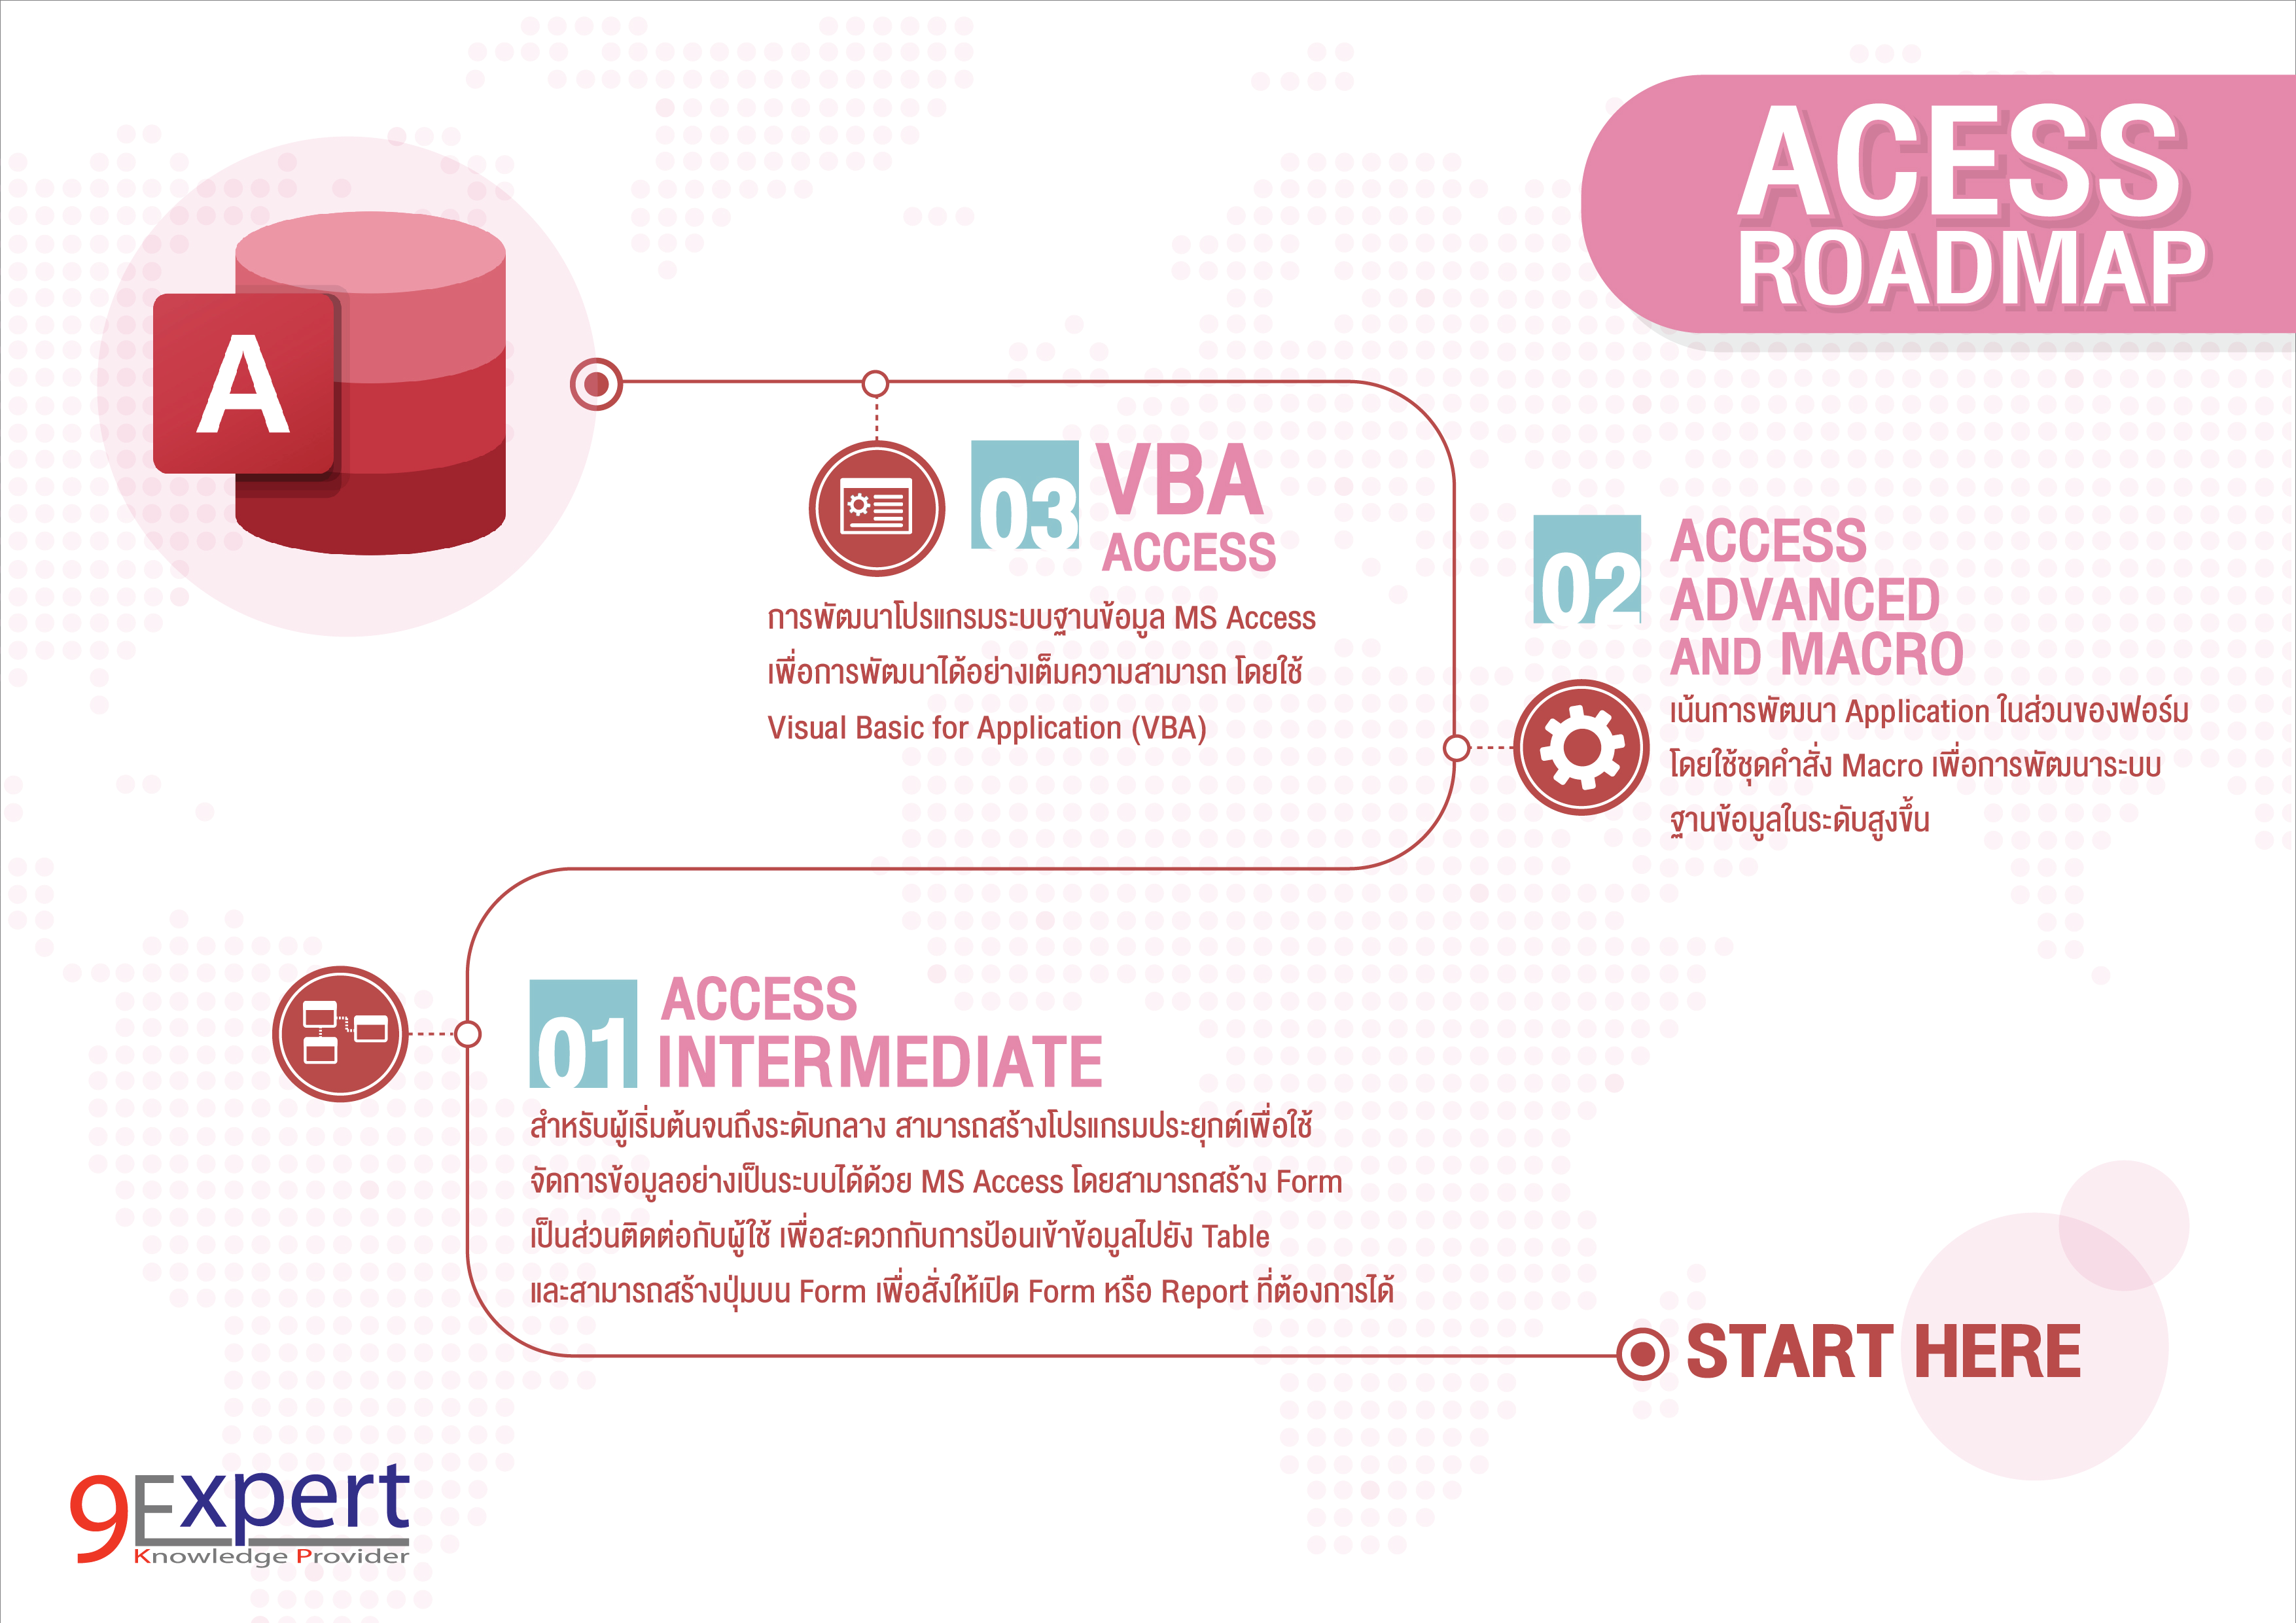 Access Roadmap